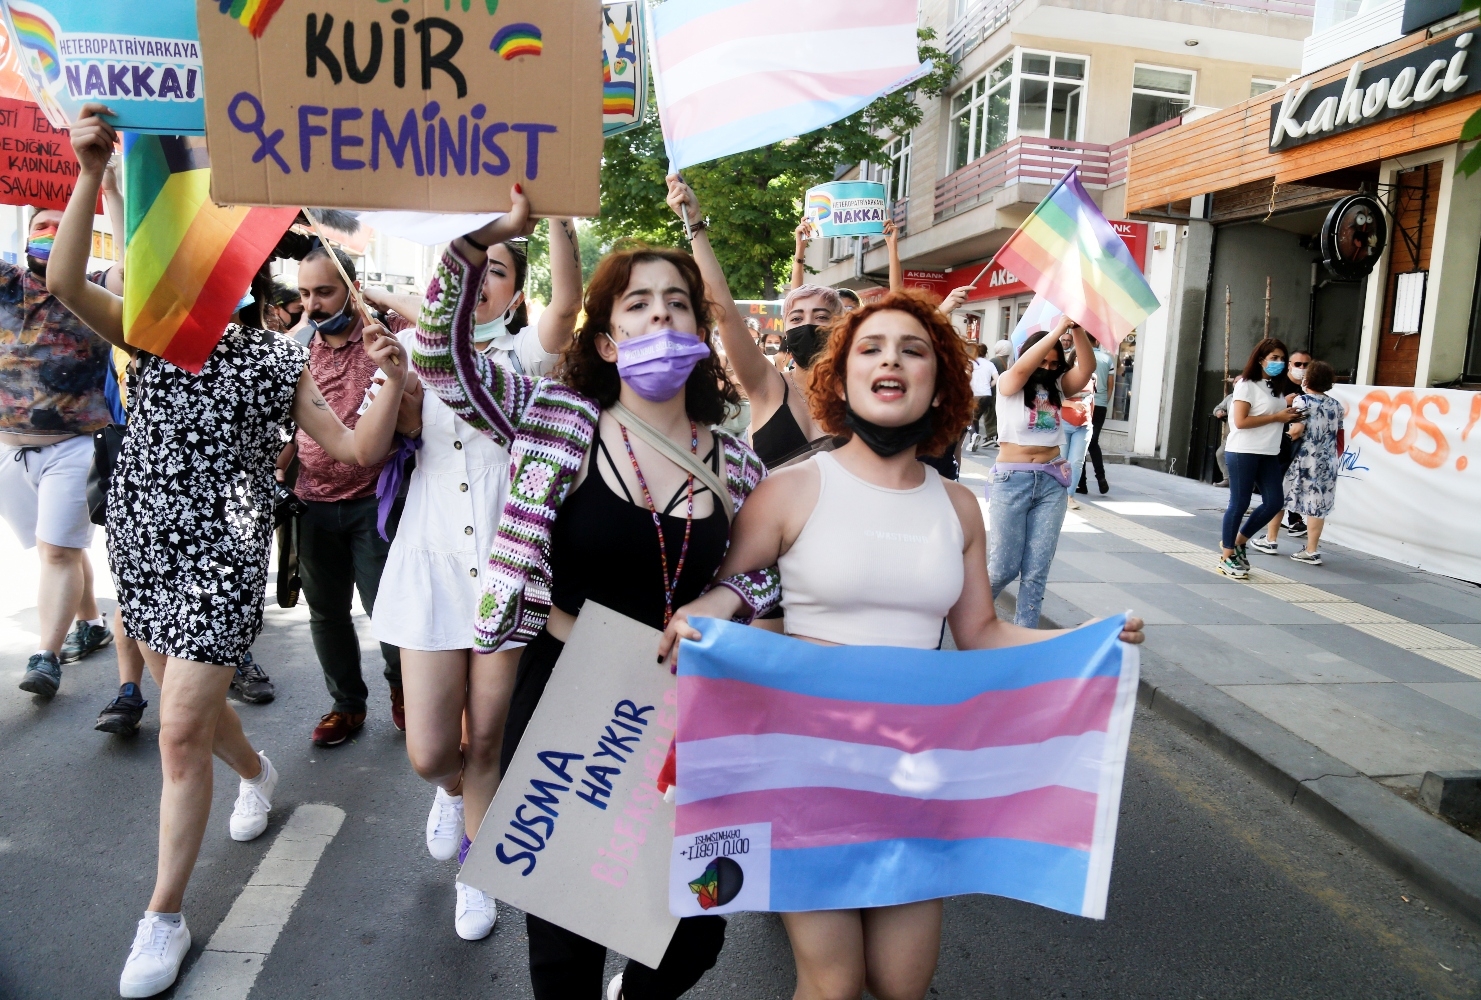 Απαγόρευσαν πάλι το Pride στην Κωνσταντινούπολη – «Δεν φοβόμαστε» δηλώνει η ΛΟΑΤΚΙ+ κοινότητα 